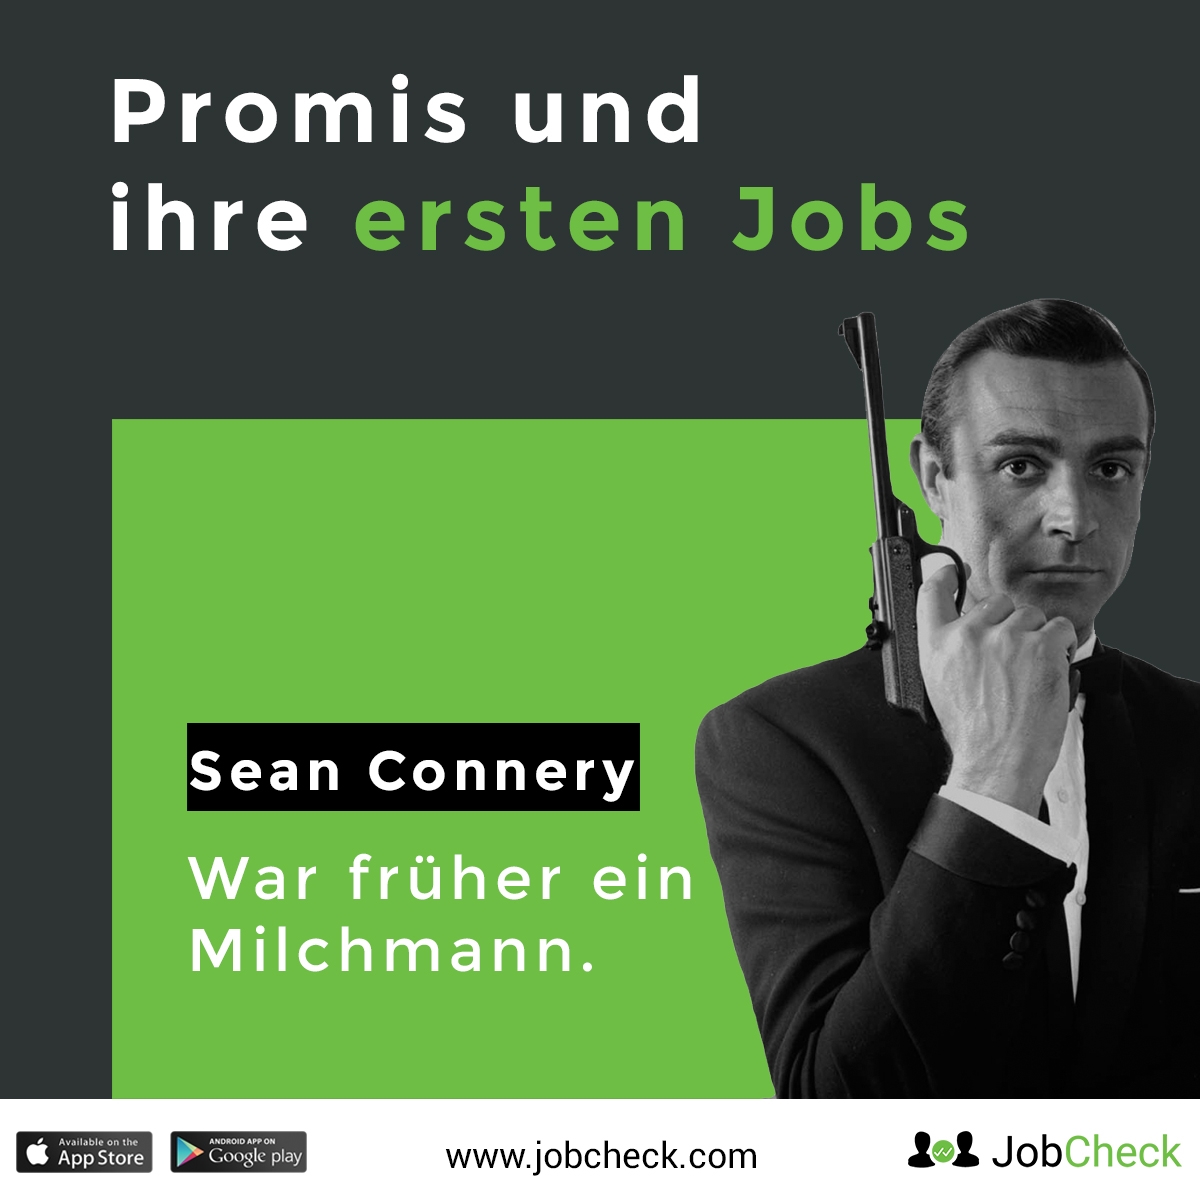 Sean Connery erster Job als Milchmann